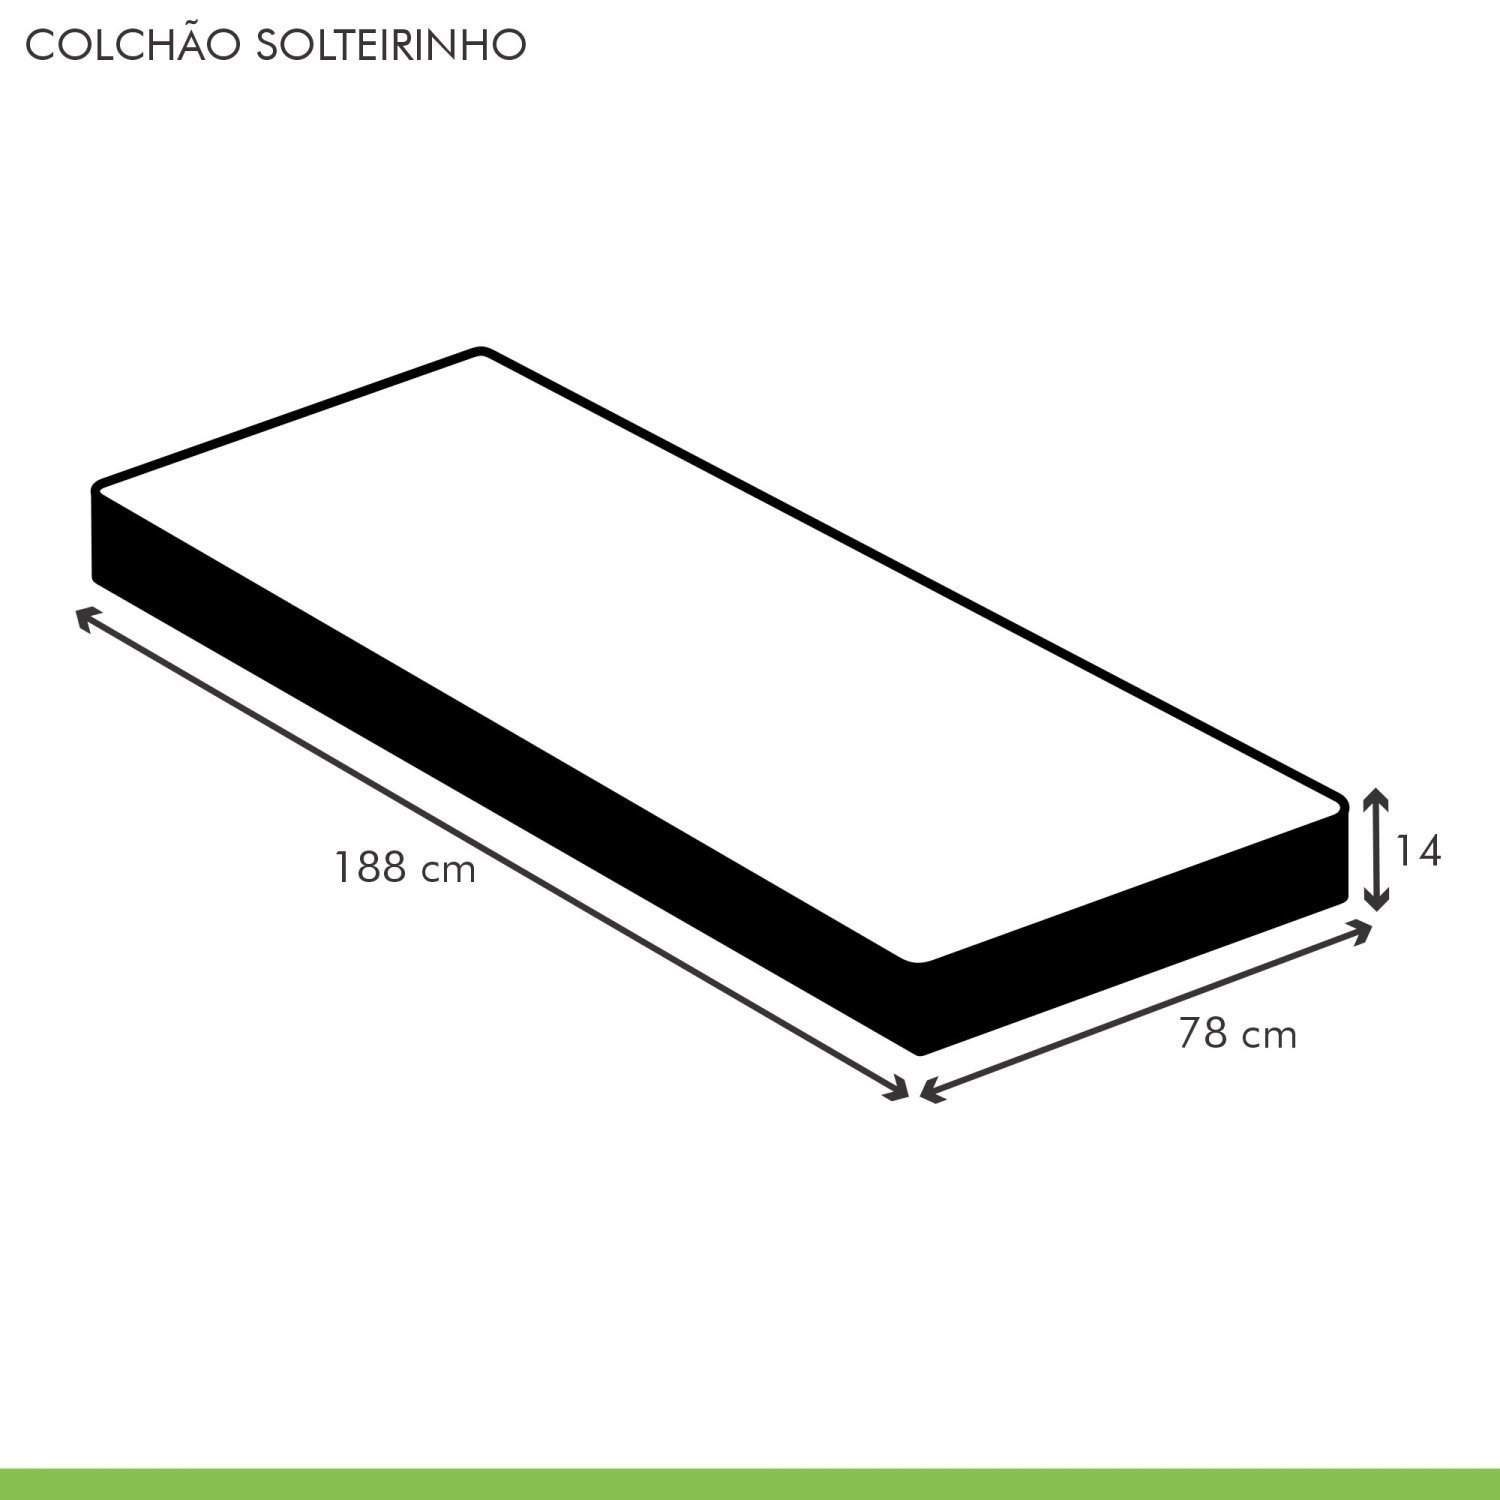 Colchão Solteiro Paropas by Ecosono Solteirinho Unique D33 Duoface 14x78x188cm  - 5